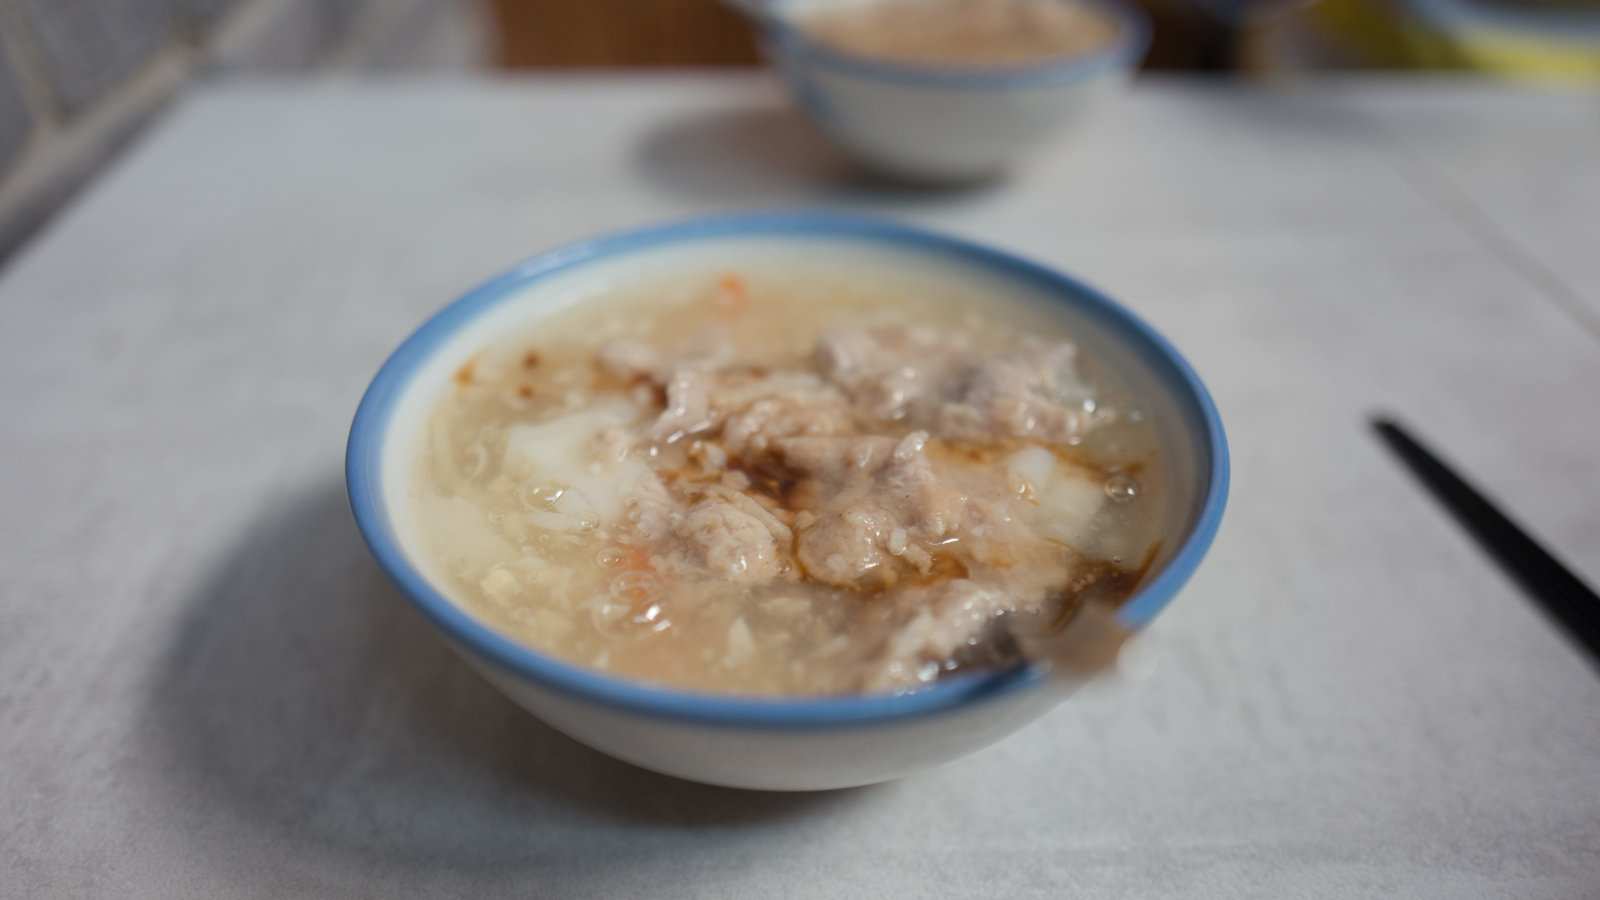 O chao ga vietnamita é uma sopa de frango e arroz quente e saborosa